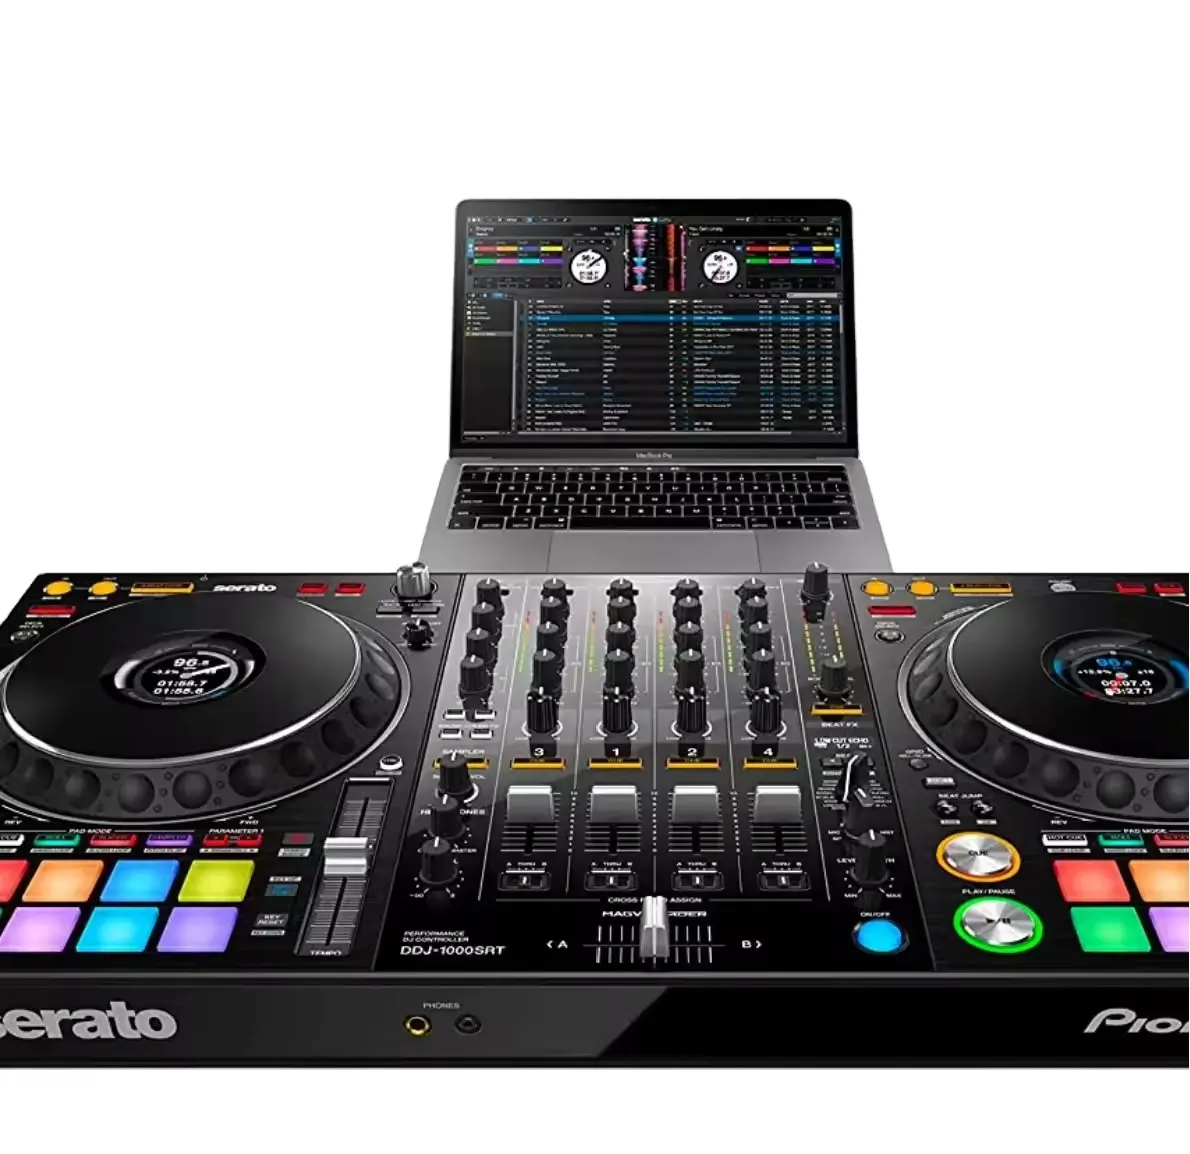 "Autêntico DJ Original DDJ-1000SRT - Mixer de Superfície de Controle de DJ com Software Serato DJ"